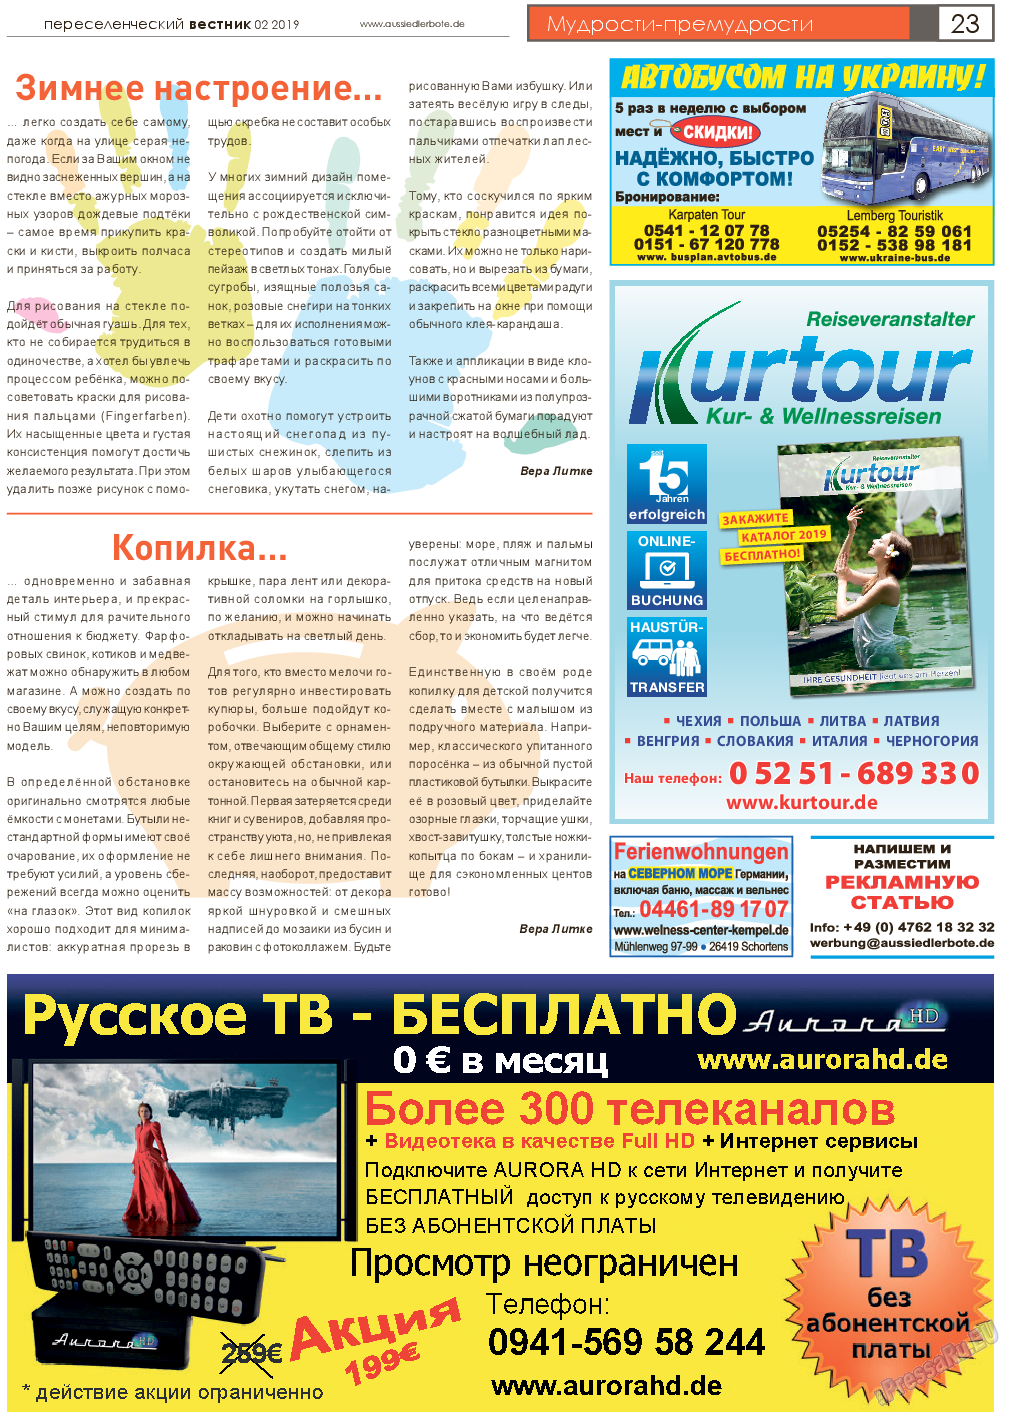 Переселенческий вестник, газета. 2019 №2 стр.23